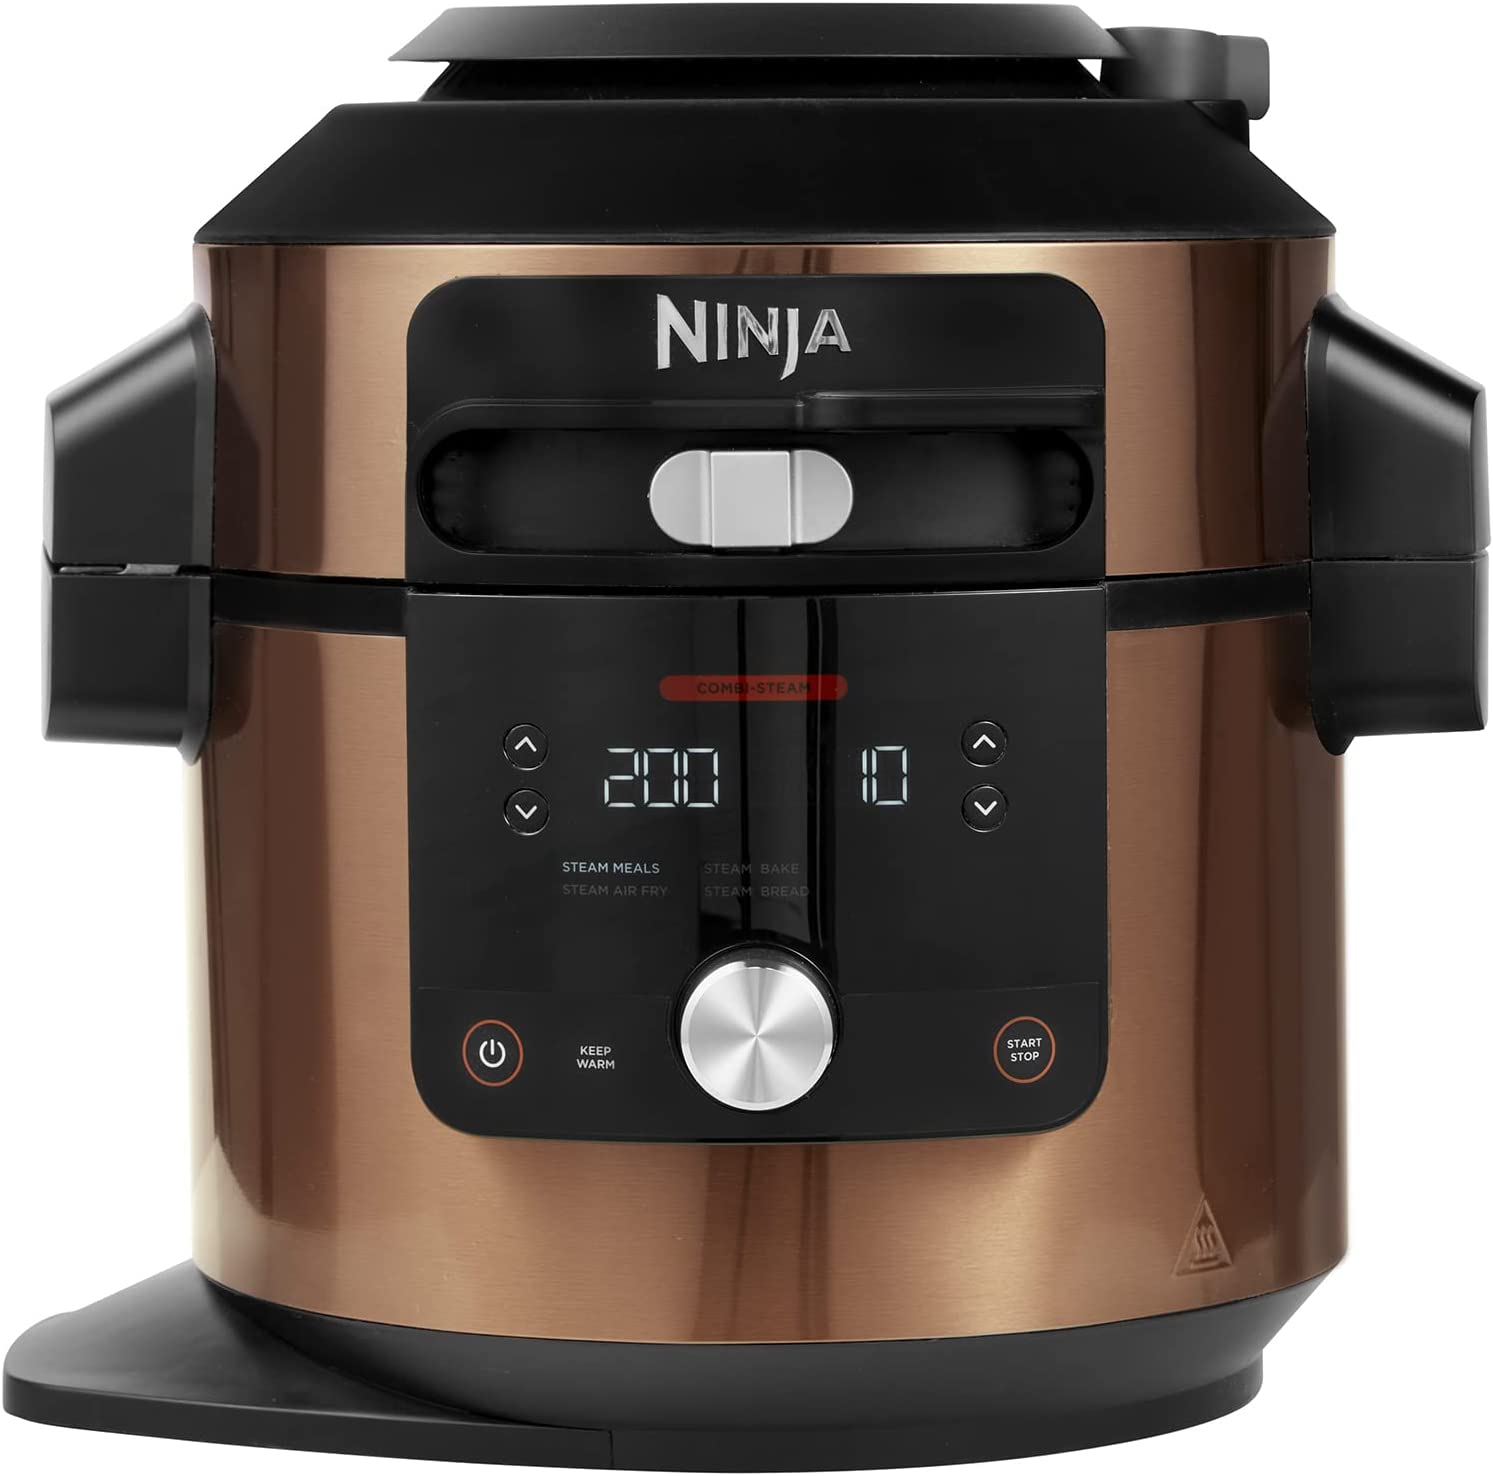 Ninja's 8-quart family Foodi 14-in-1 Air Fry Multi-Cooker hits